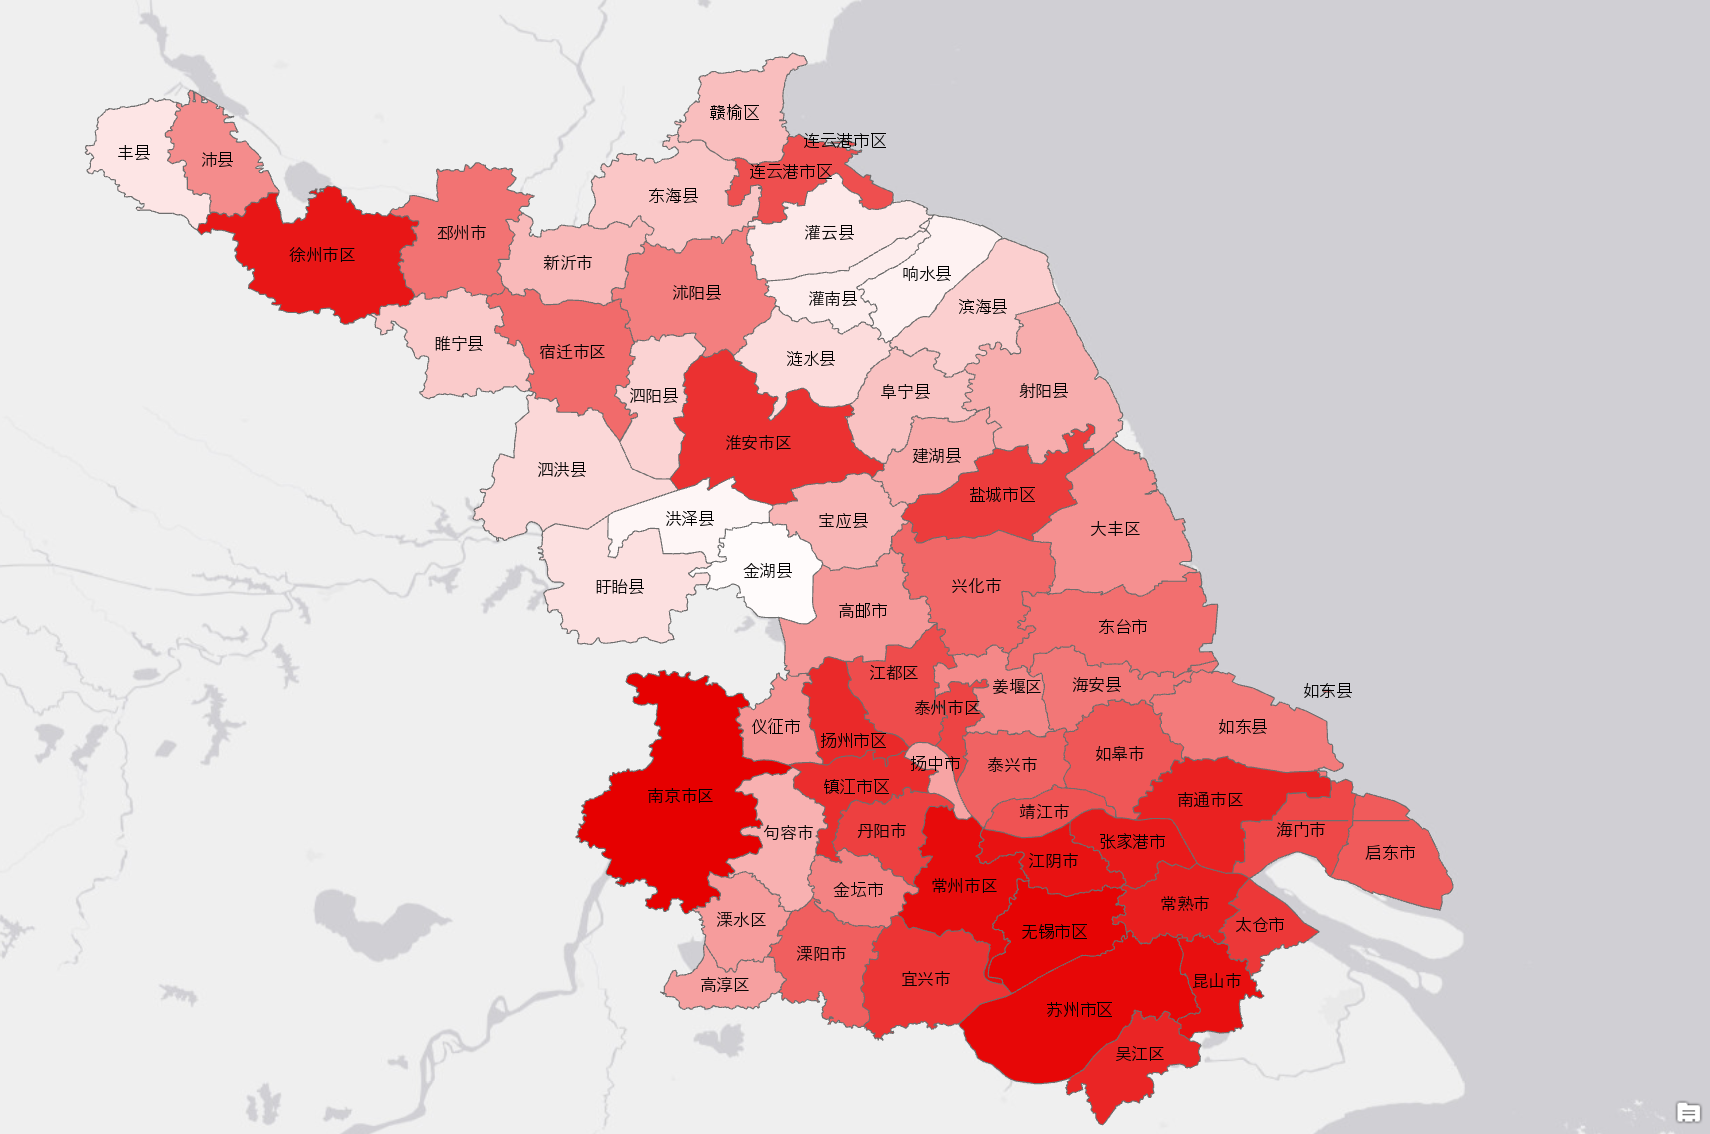 Administrative boundaries in Jiangsu 2010